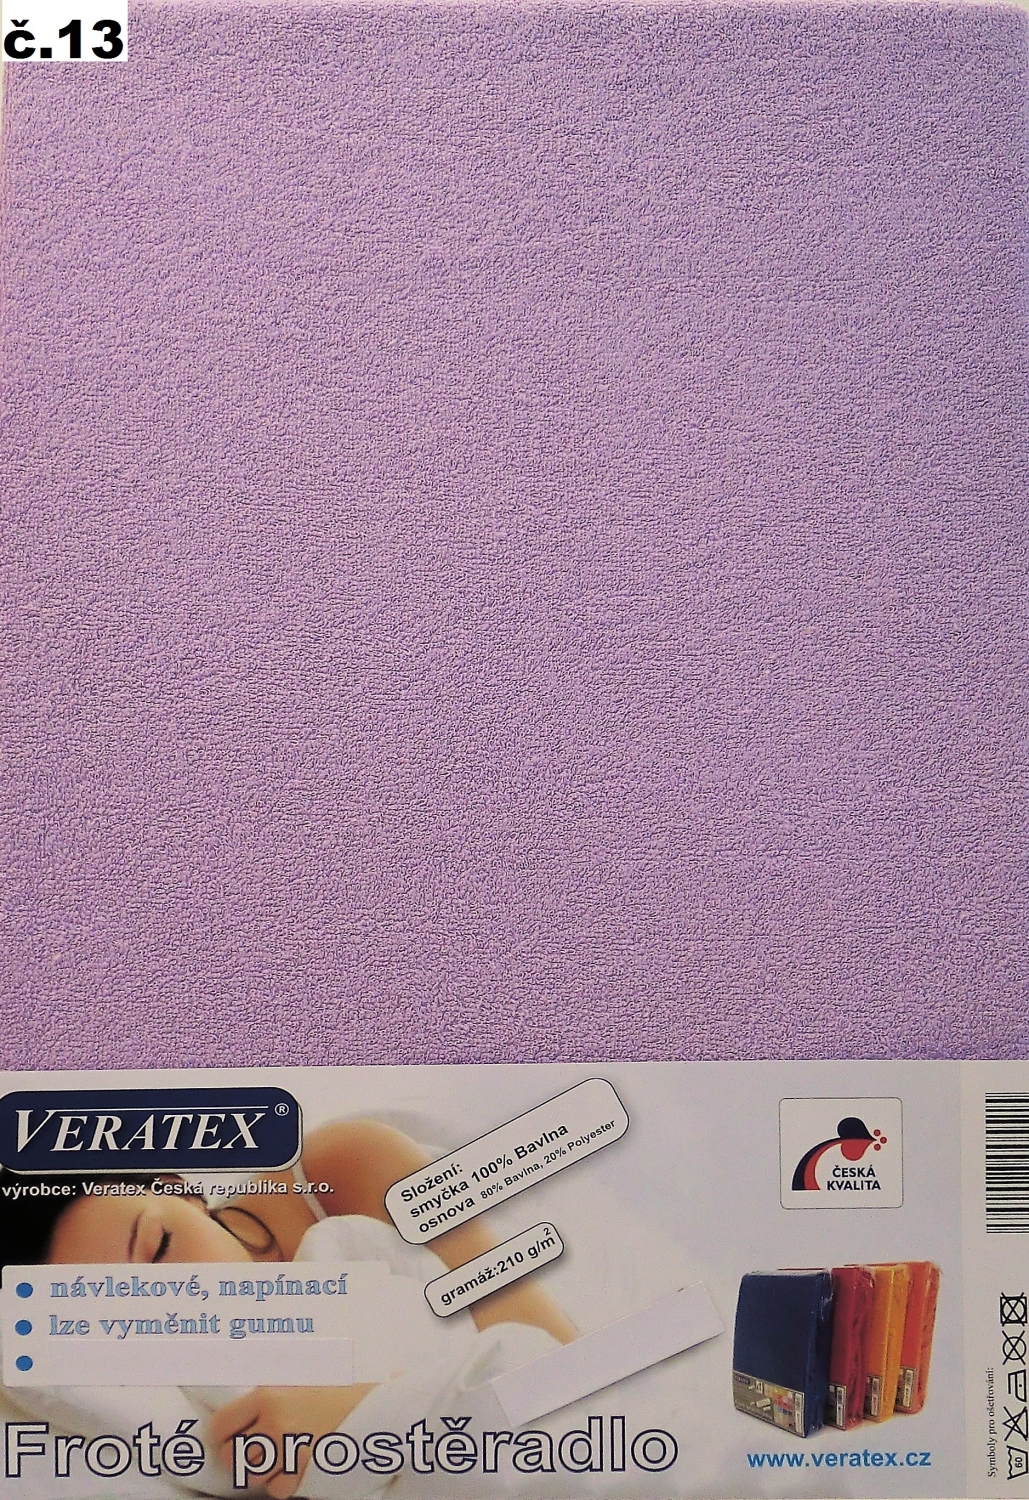 Veratex Froté prostěradlo 100x200 cm (č.13-fialková)